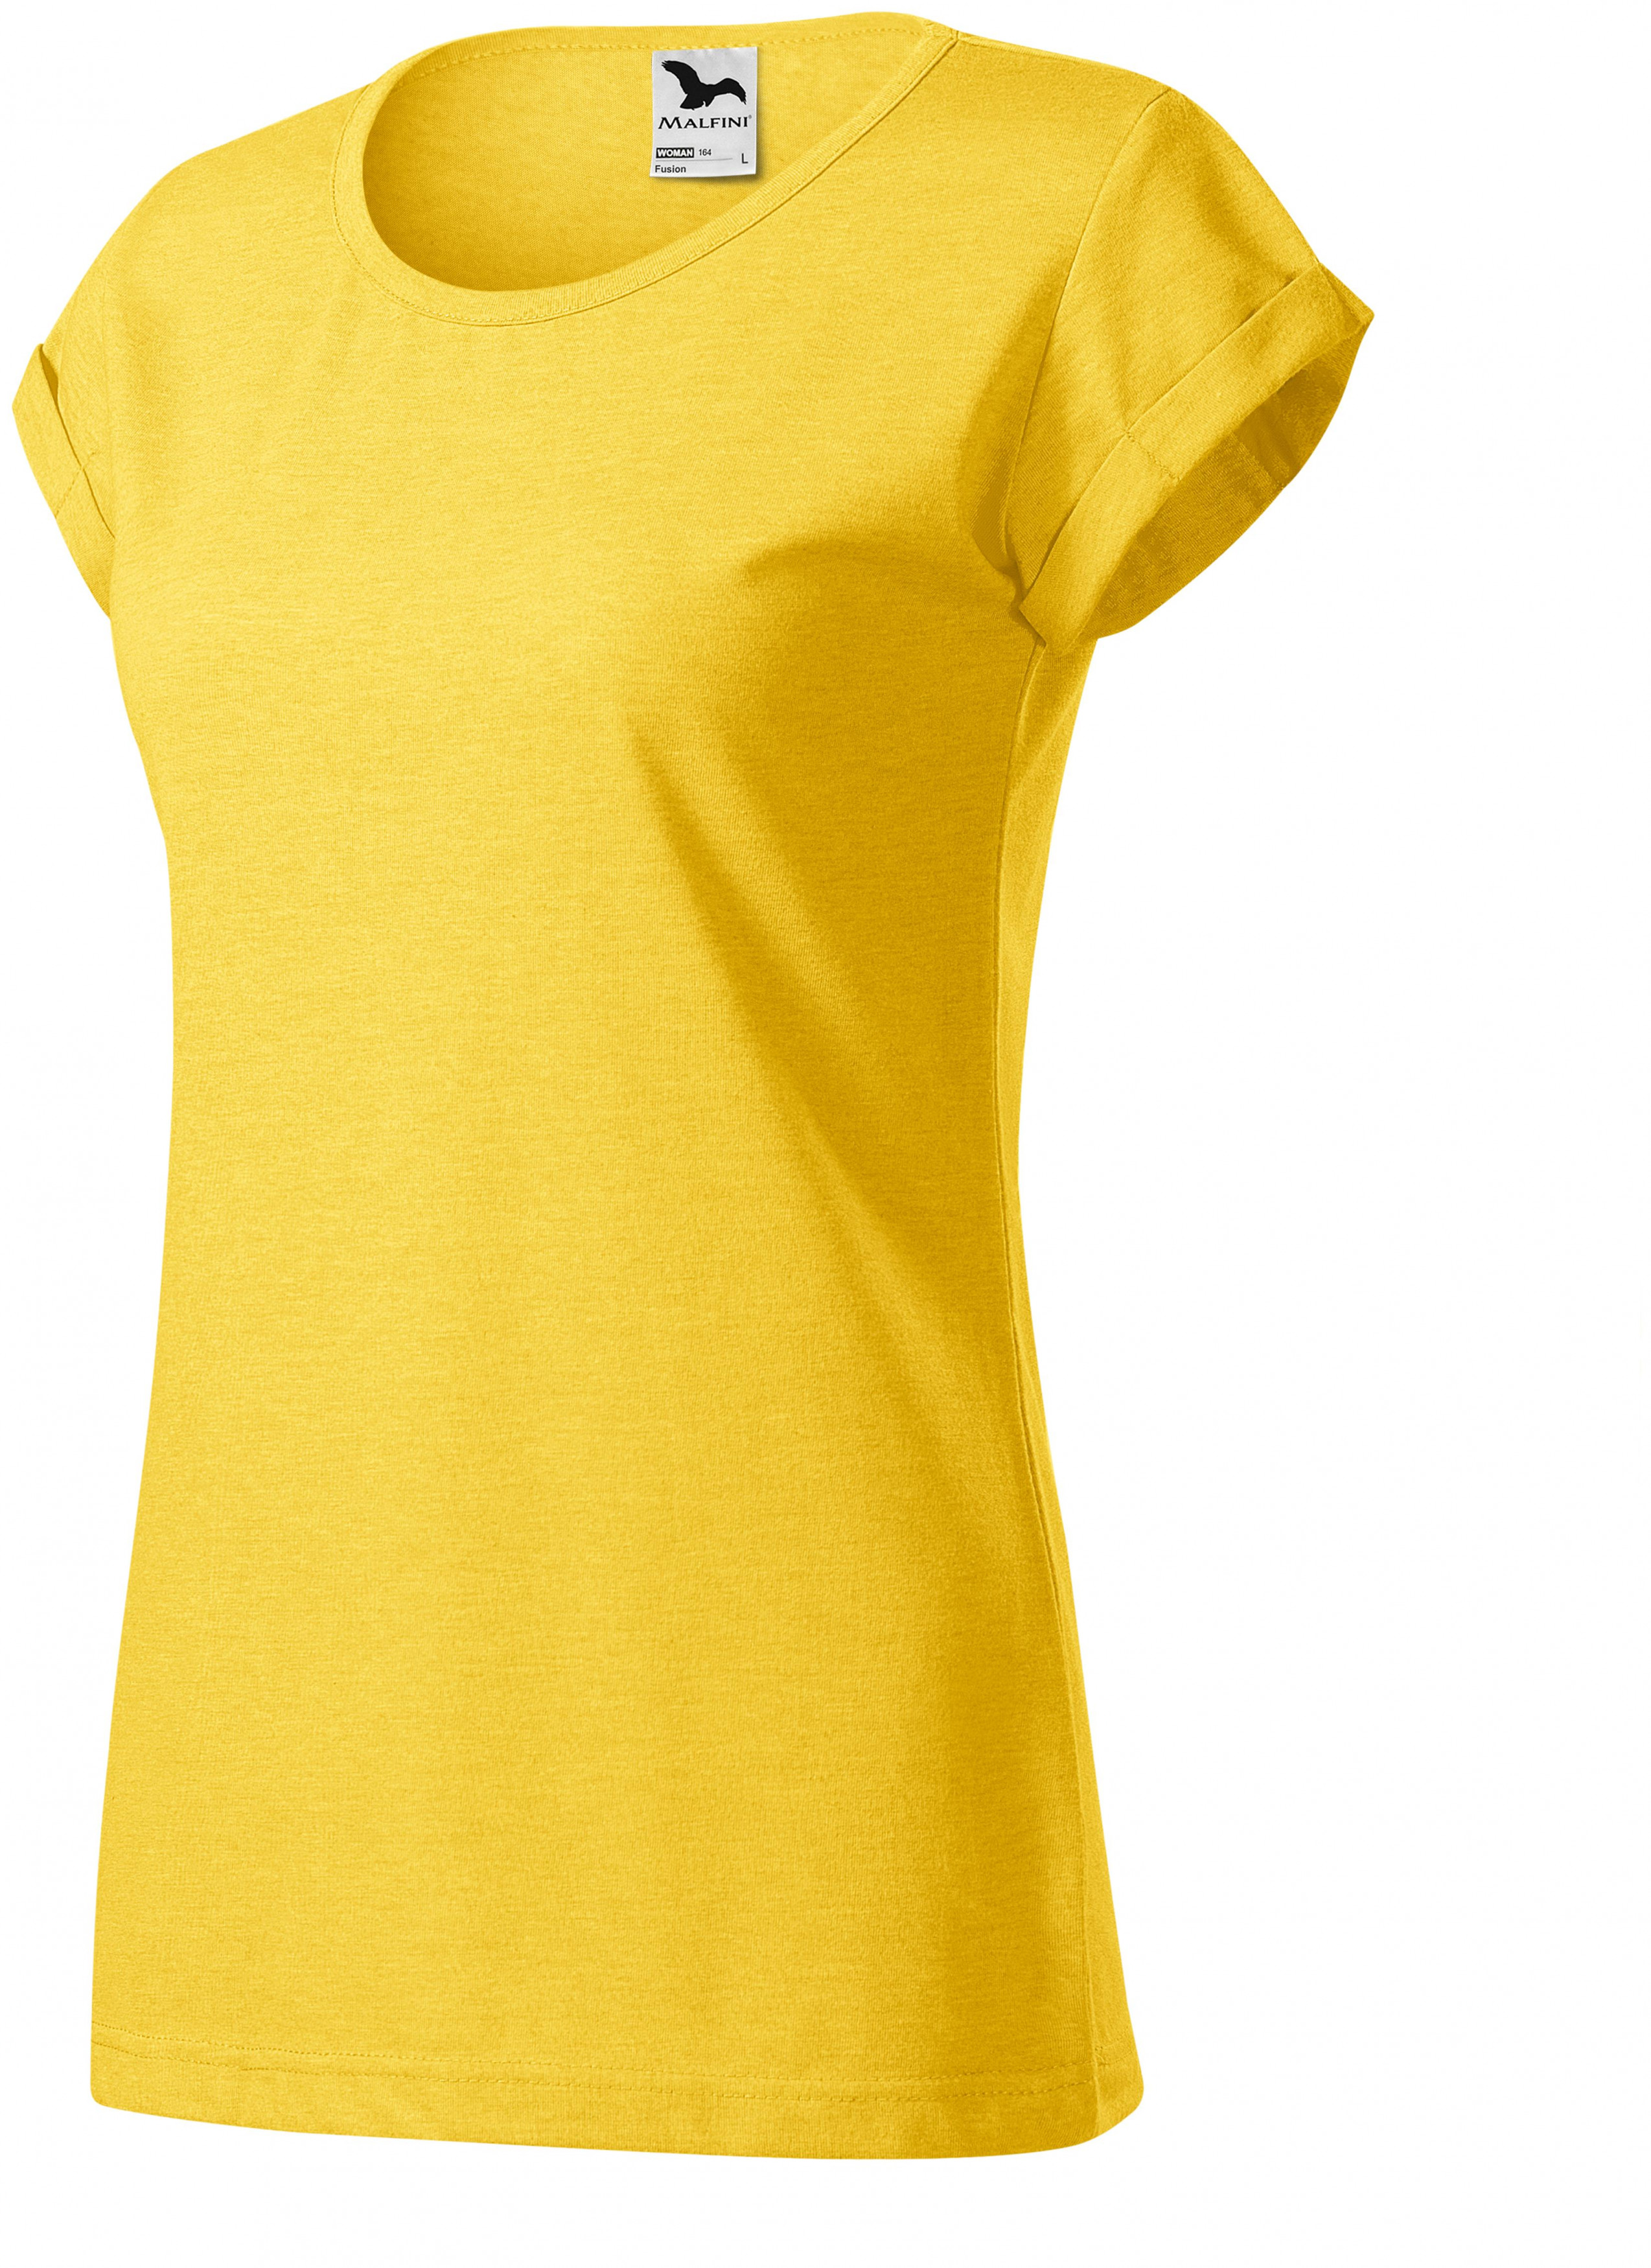 Dámske tričko s vyhrnutými rukávmi, žltý melír, L